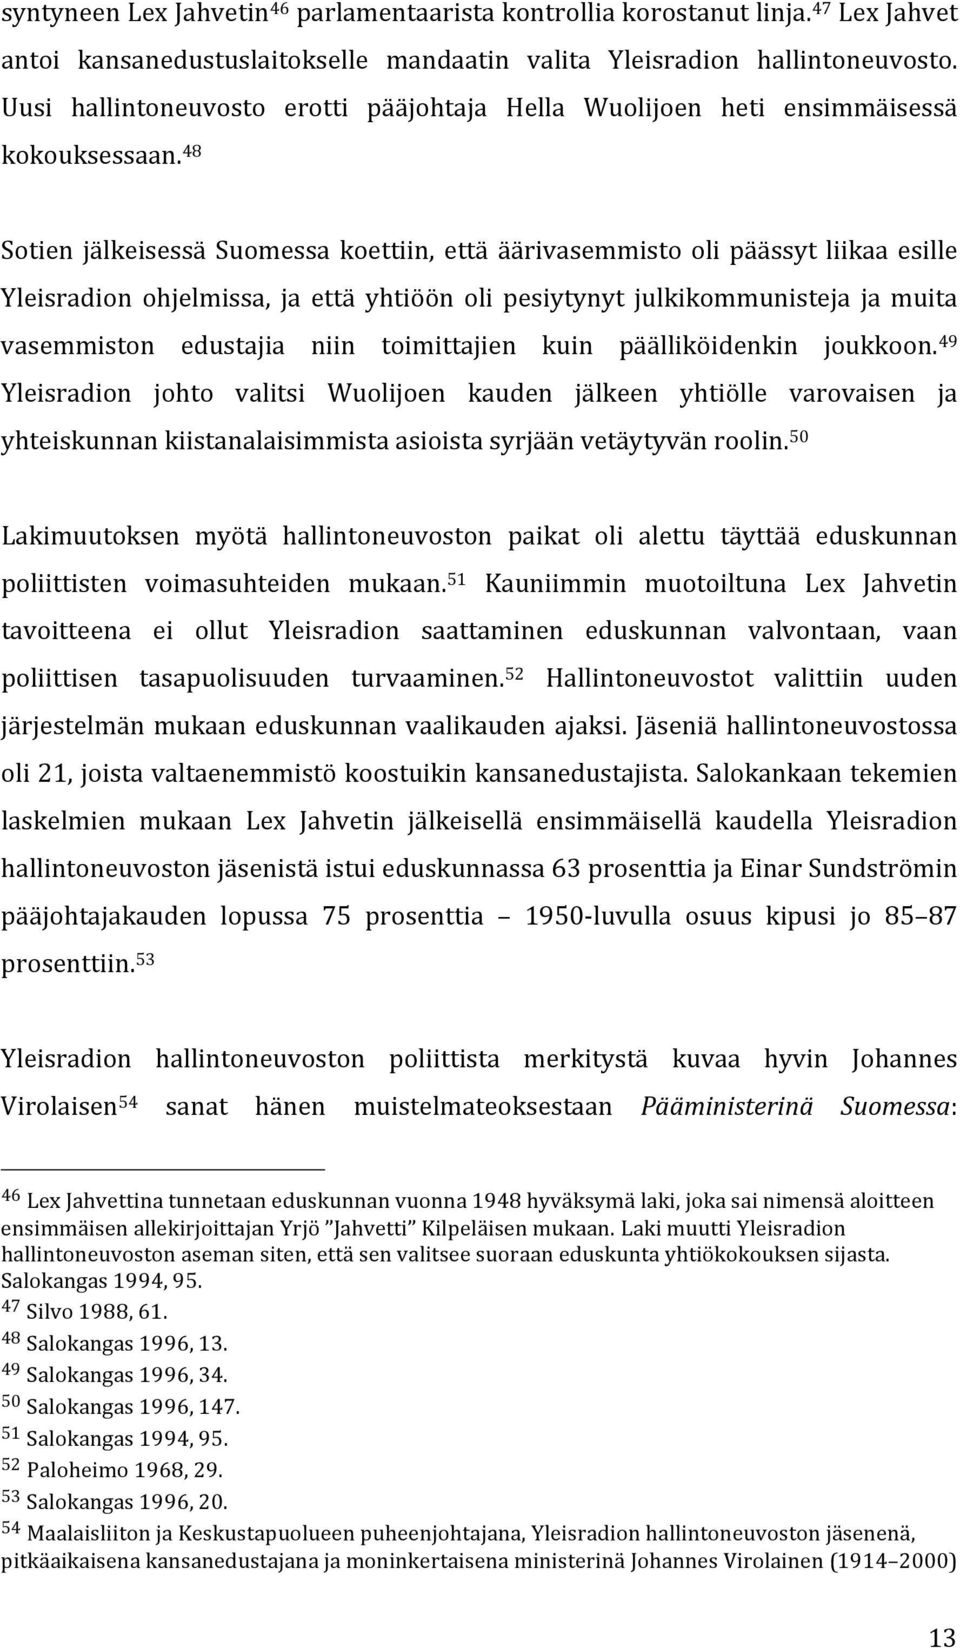 48 Sotien jälkeisessä Suomessa koettiin, että äärivasemmisto oli päässyt liikaa esille Yleisradion ohjelmissa, ja että yhtiöön oli pesiytynyt julkikommunisteja ja muita vasemmiston edustajia niin